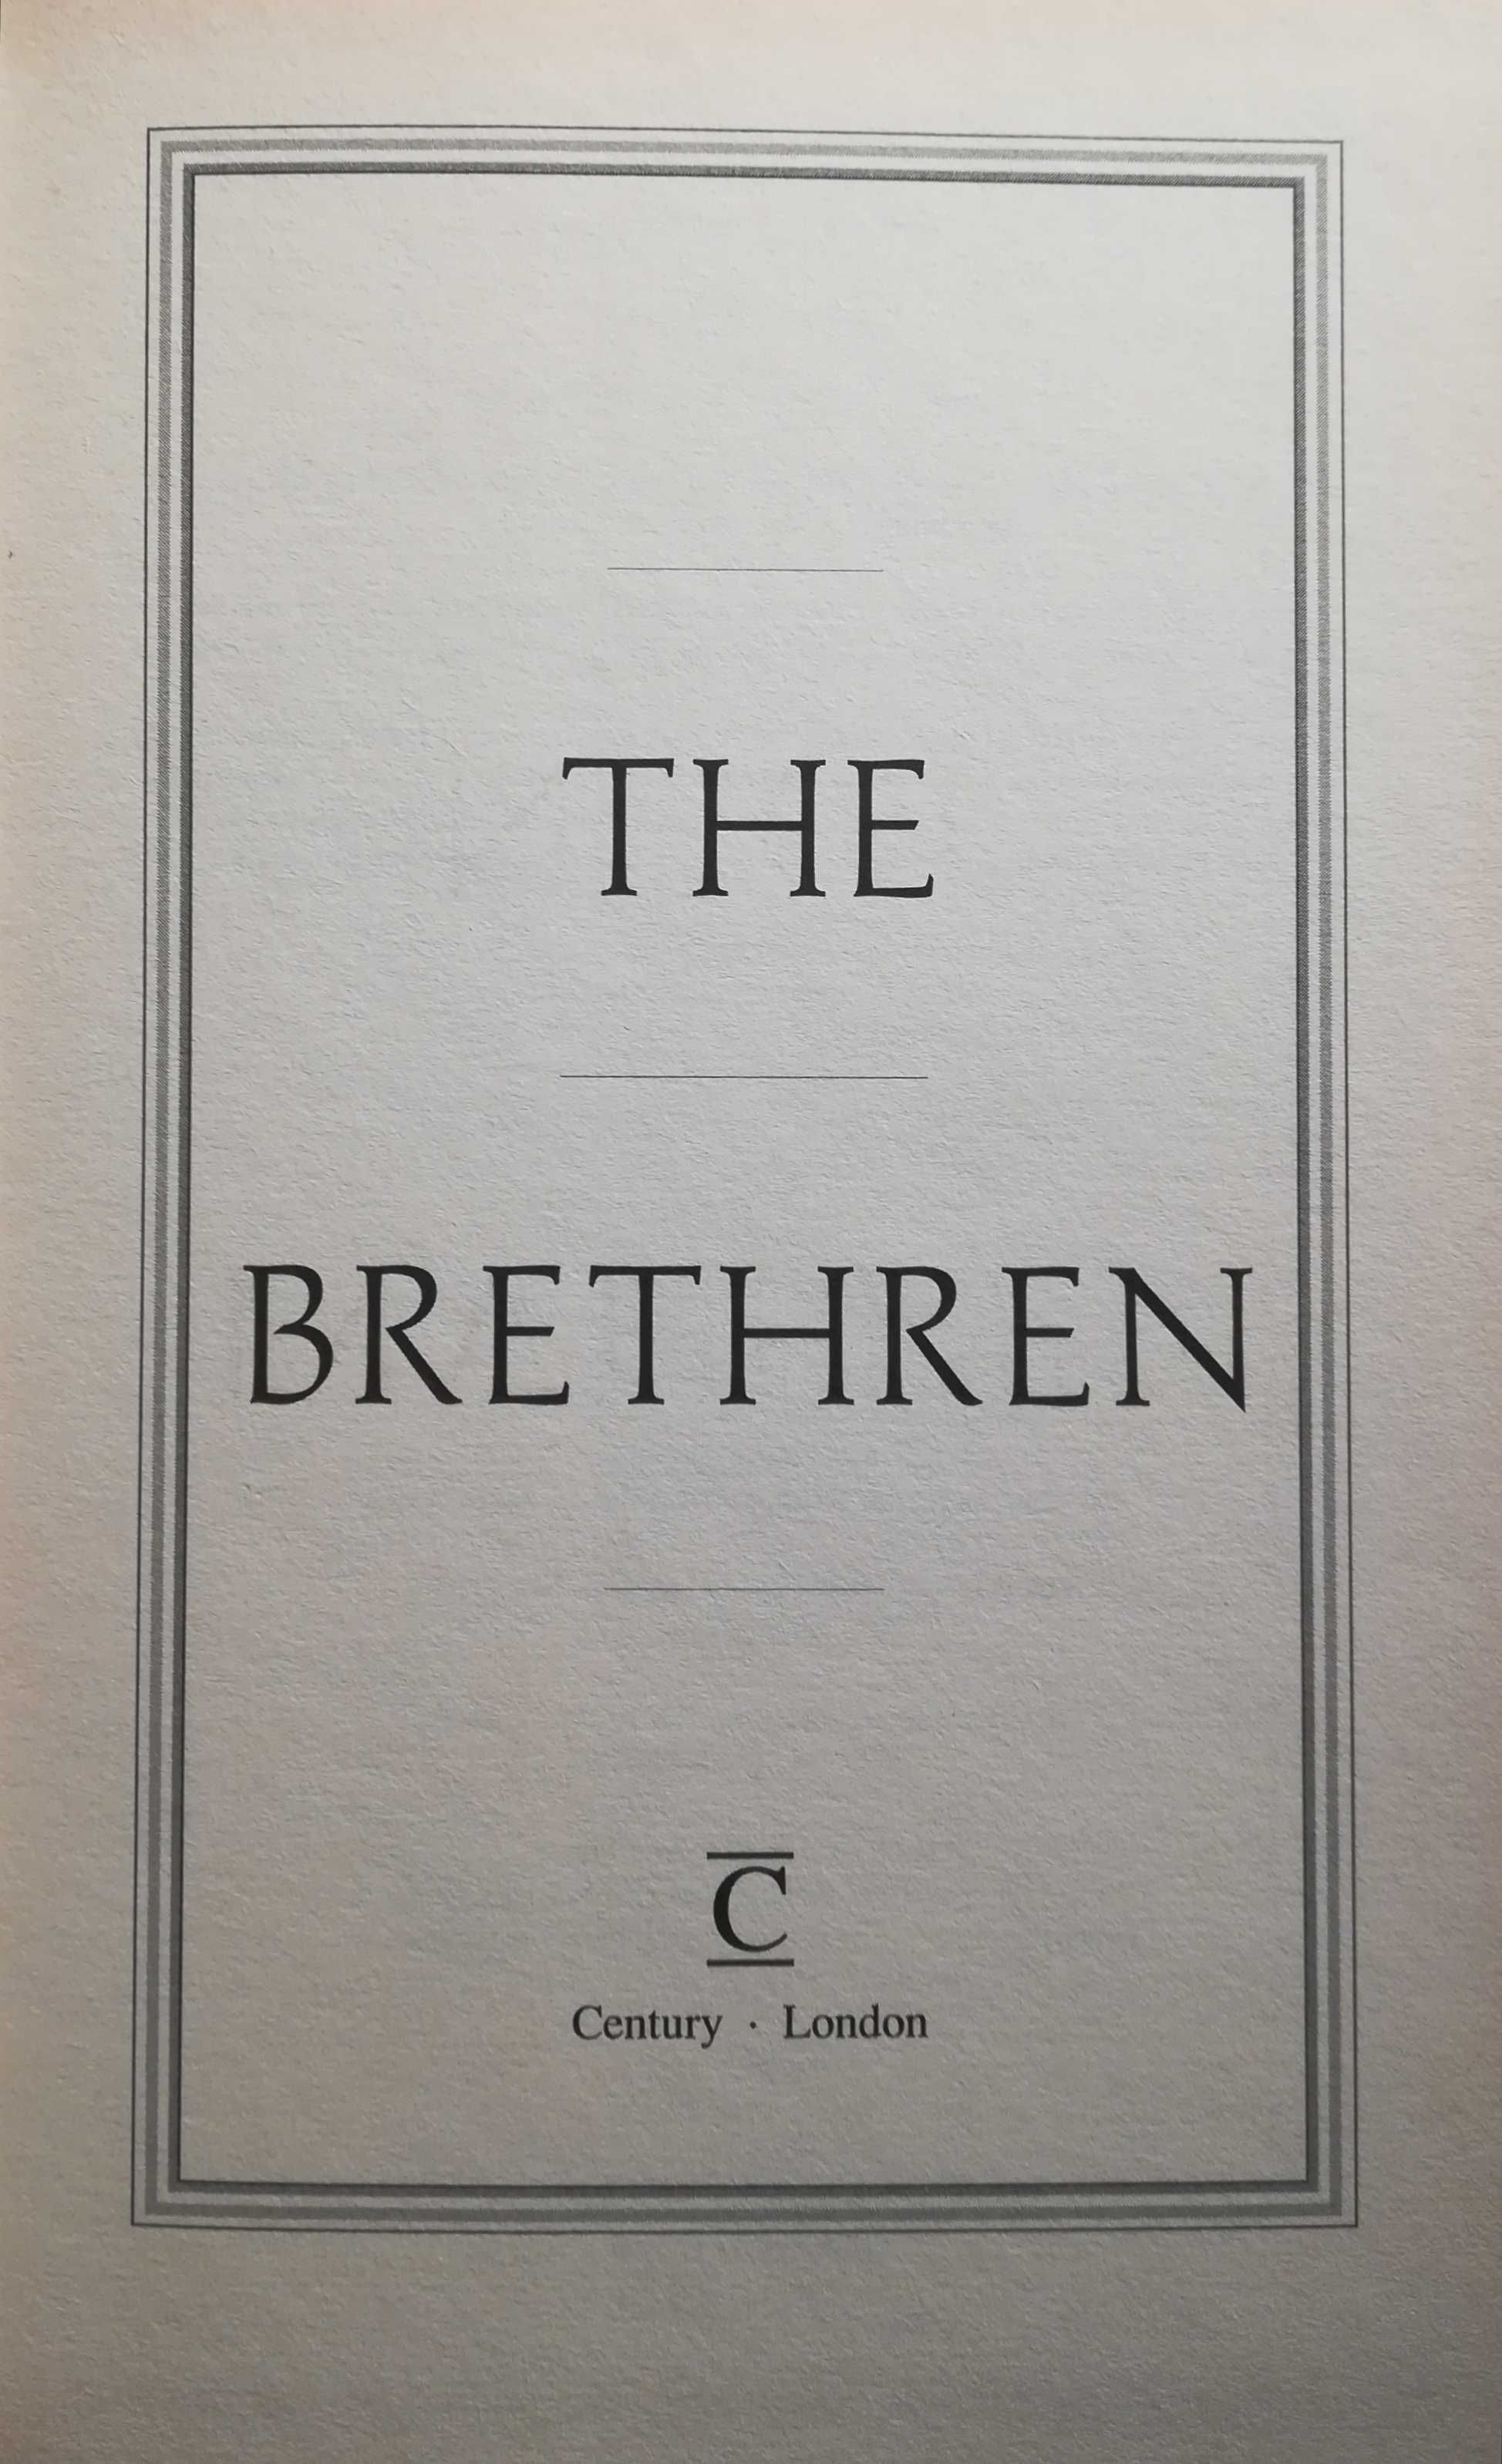 Livro - The Brethren - John Grisham